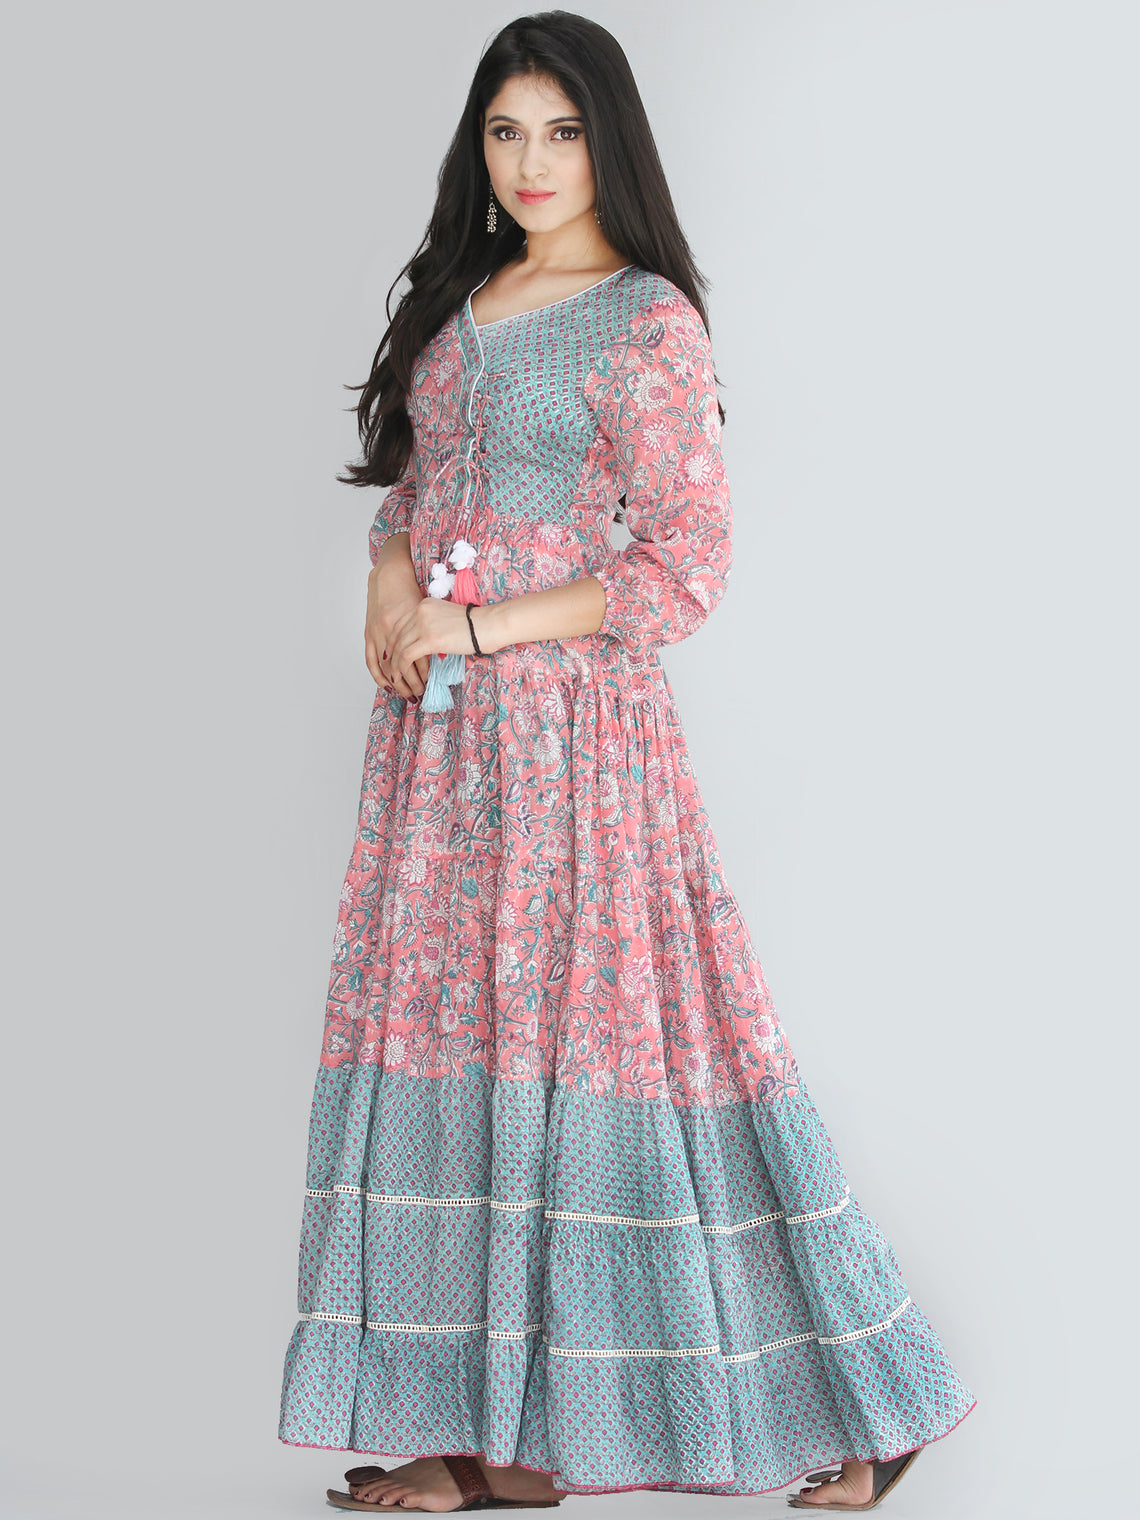 Gulzar Nohreen - Coral Hand Block Printed Tiered Long Angrakha Dress W ...